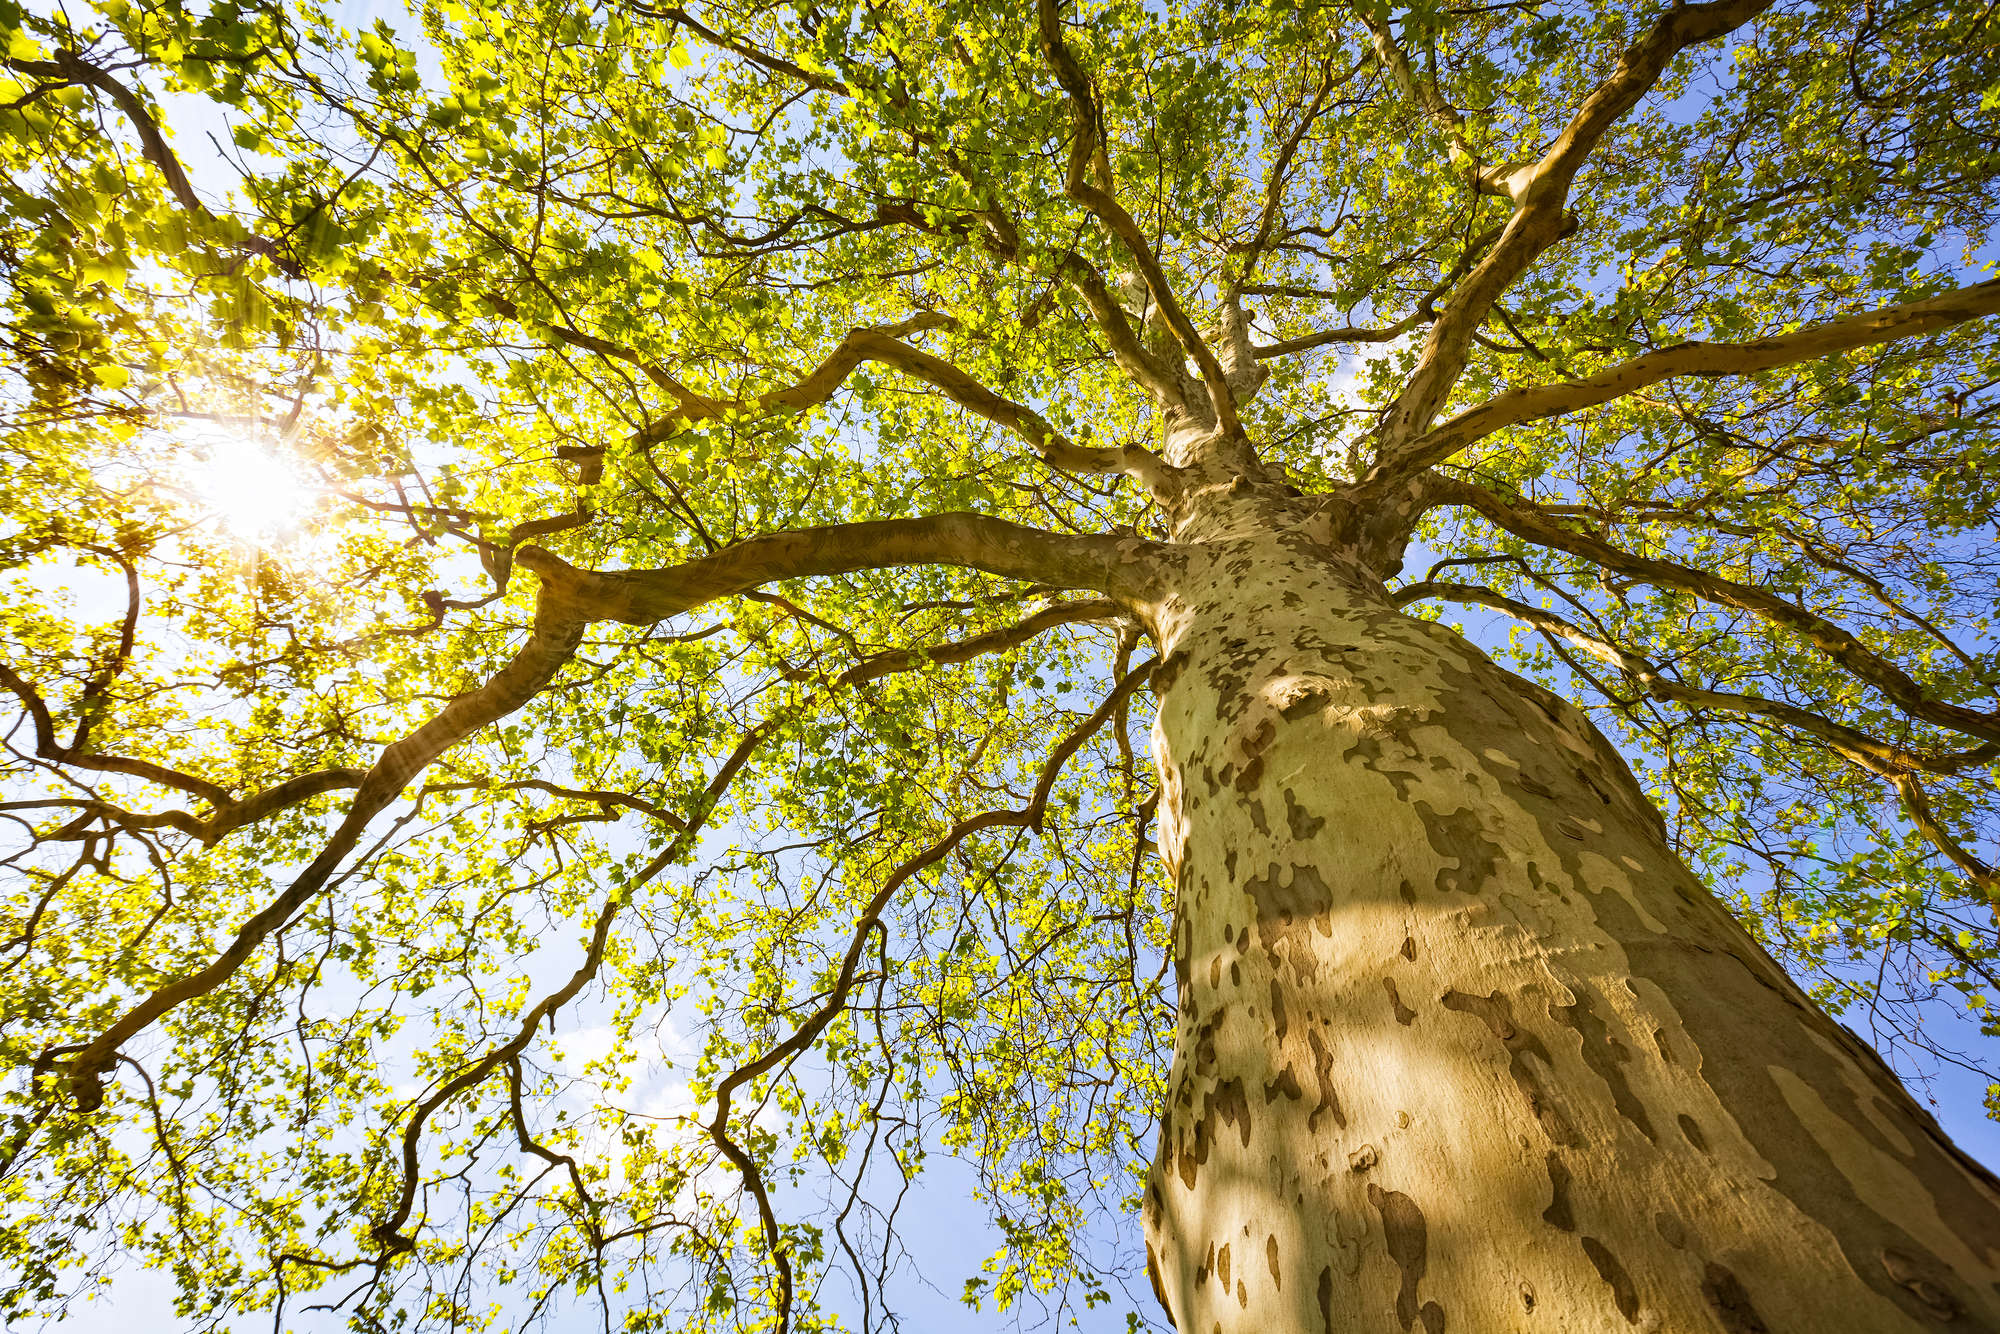             Natuurbehang boomkruinen motief op parelmoer glad vlies
        